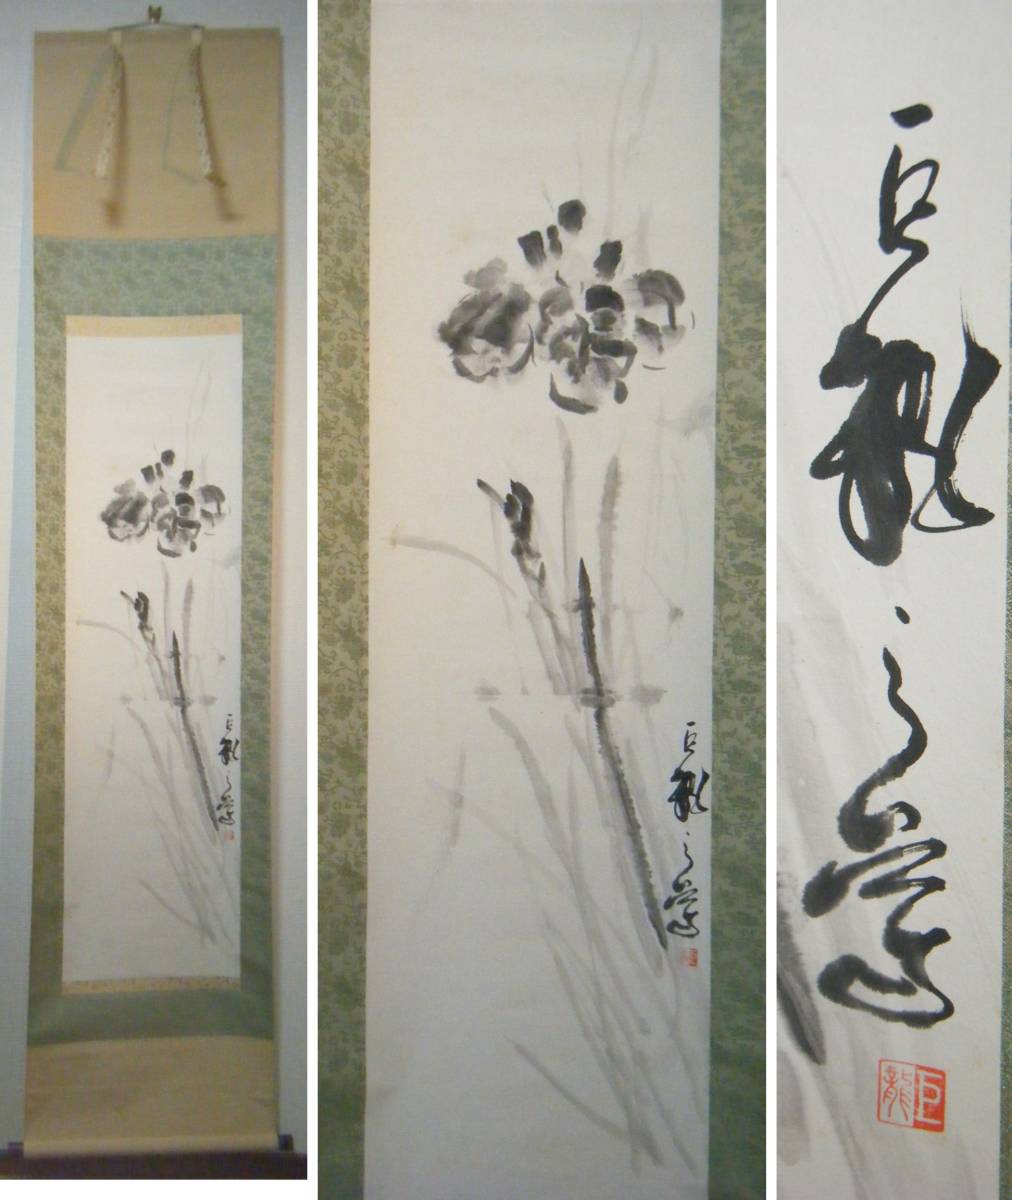 [أصيل] لفيفة معلقة مع تنين عملاق وزهرة, قطعة ممتازة L153, تلوين, اللوحة اليابانية, الزهور والطيور, الحياة البرية